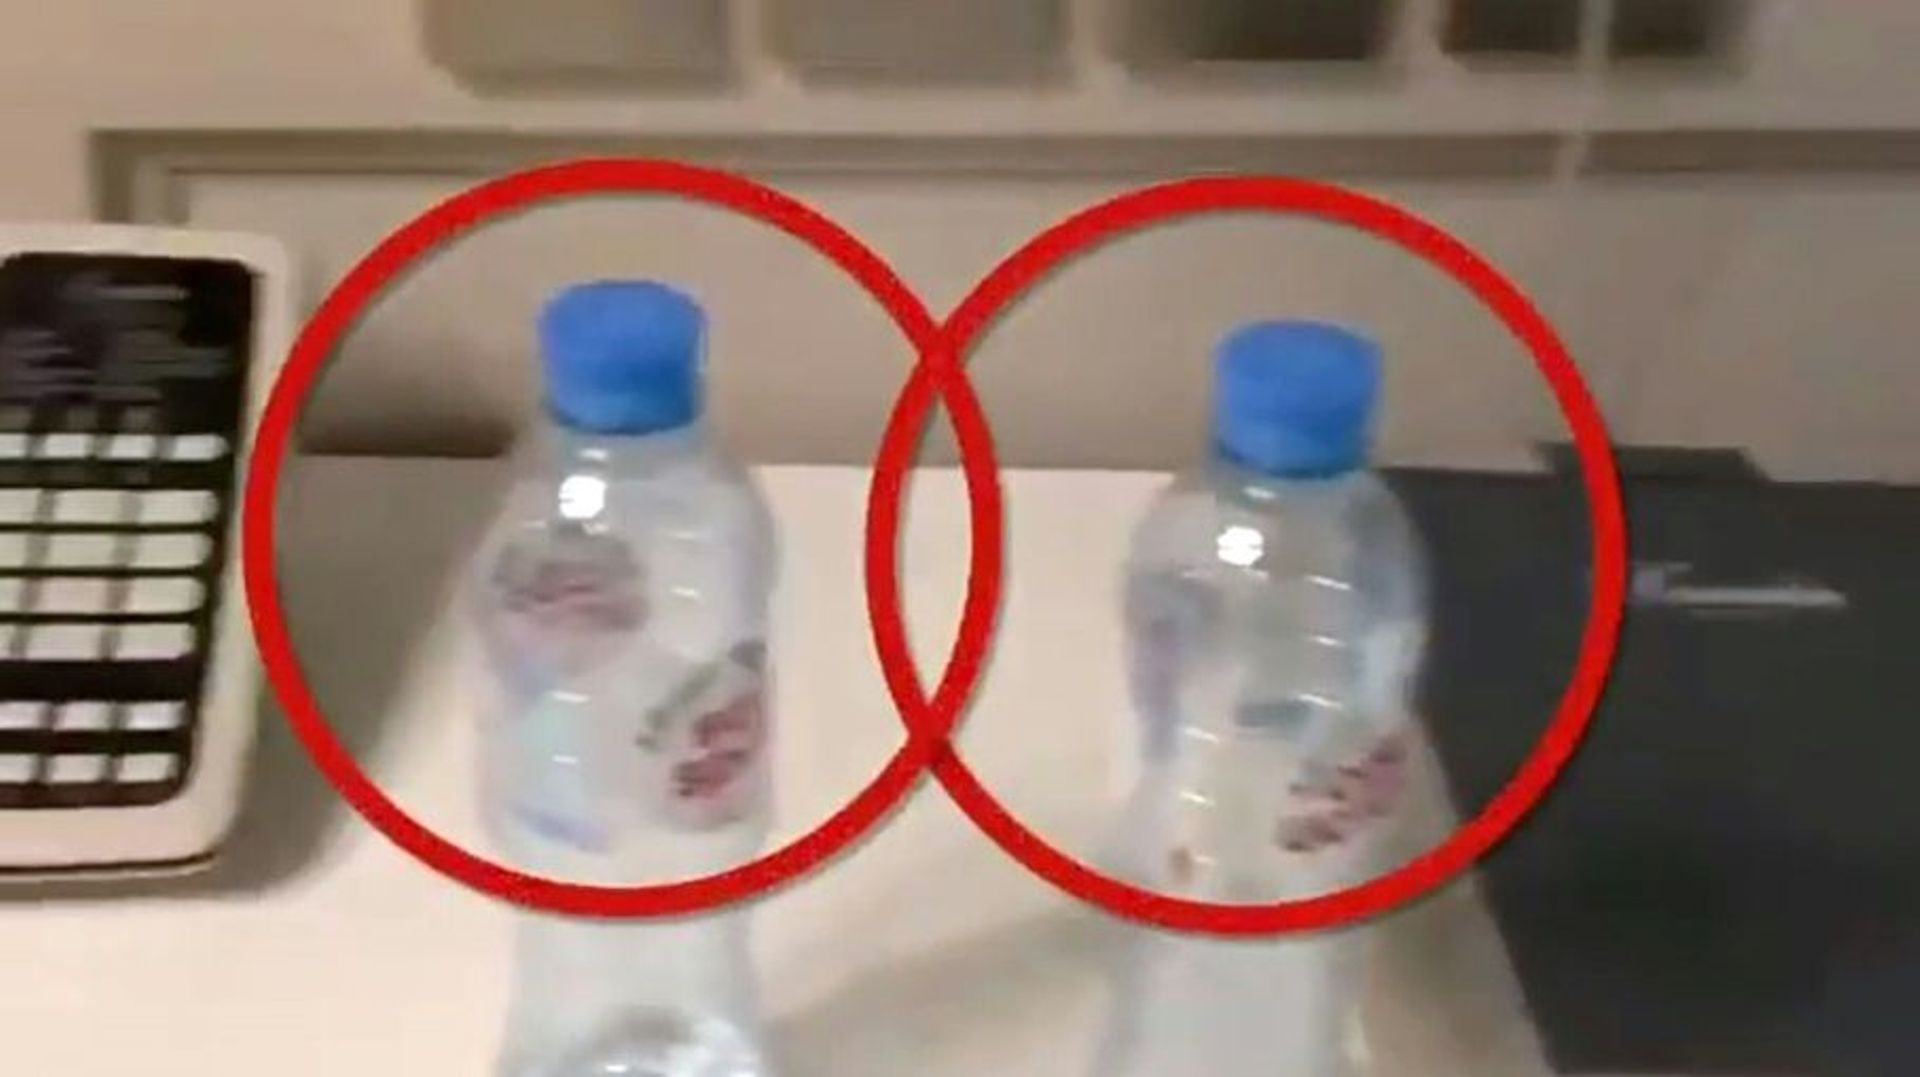 Cette image, postée le 17 septembre 2020 sur le compte Instagram @navalny, montre des bouteilles d'eau minérale "Svyatoi Istochnik" ("Source Sacrée") dans une chambre occupée par l'opposant russe Alexeï Navalny à Tomsk, en Sibérie: des traces de poison au